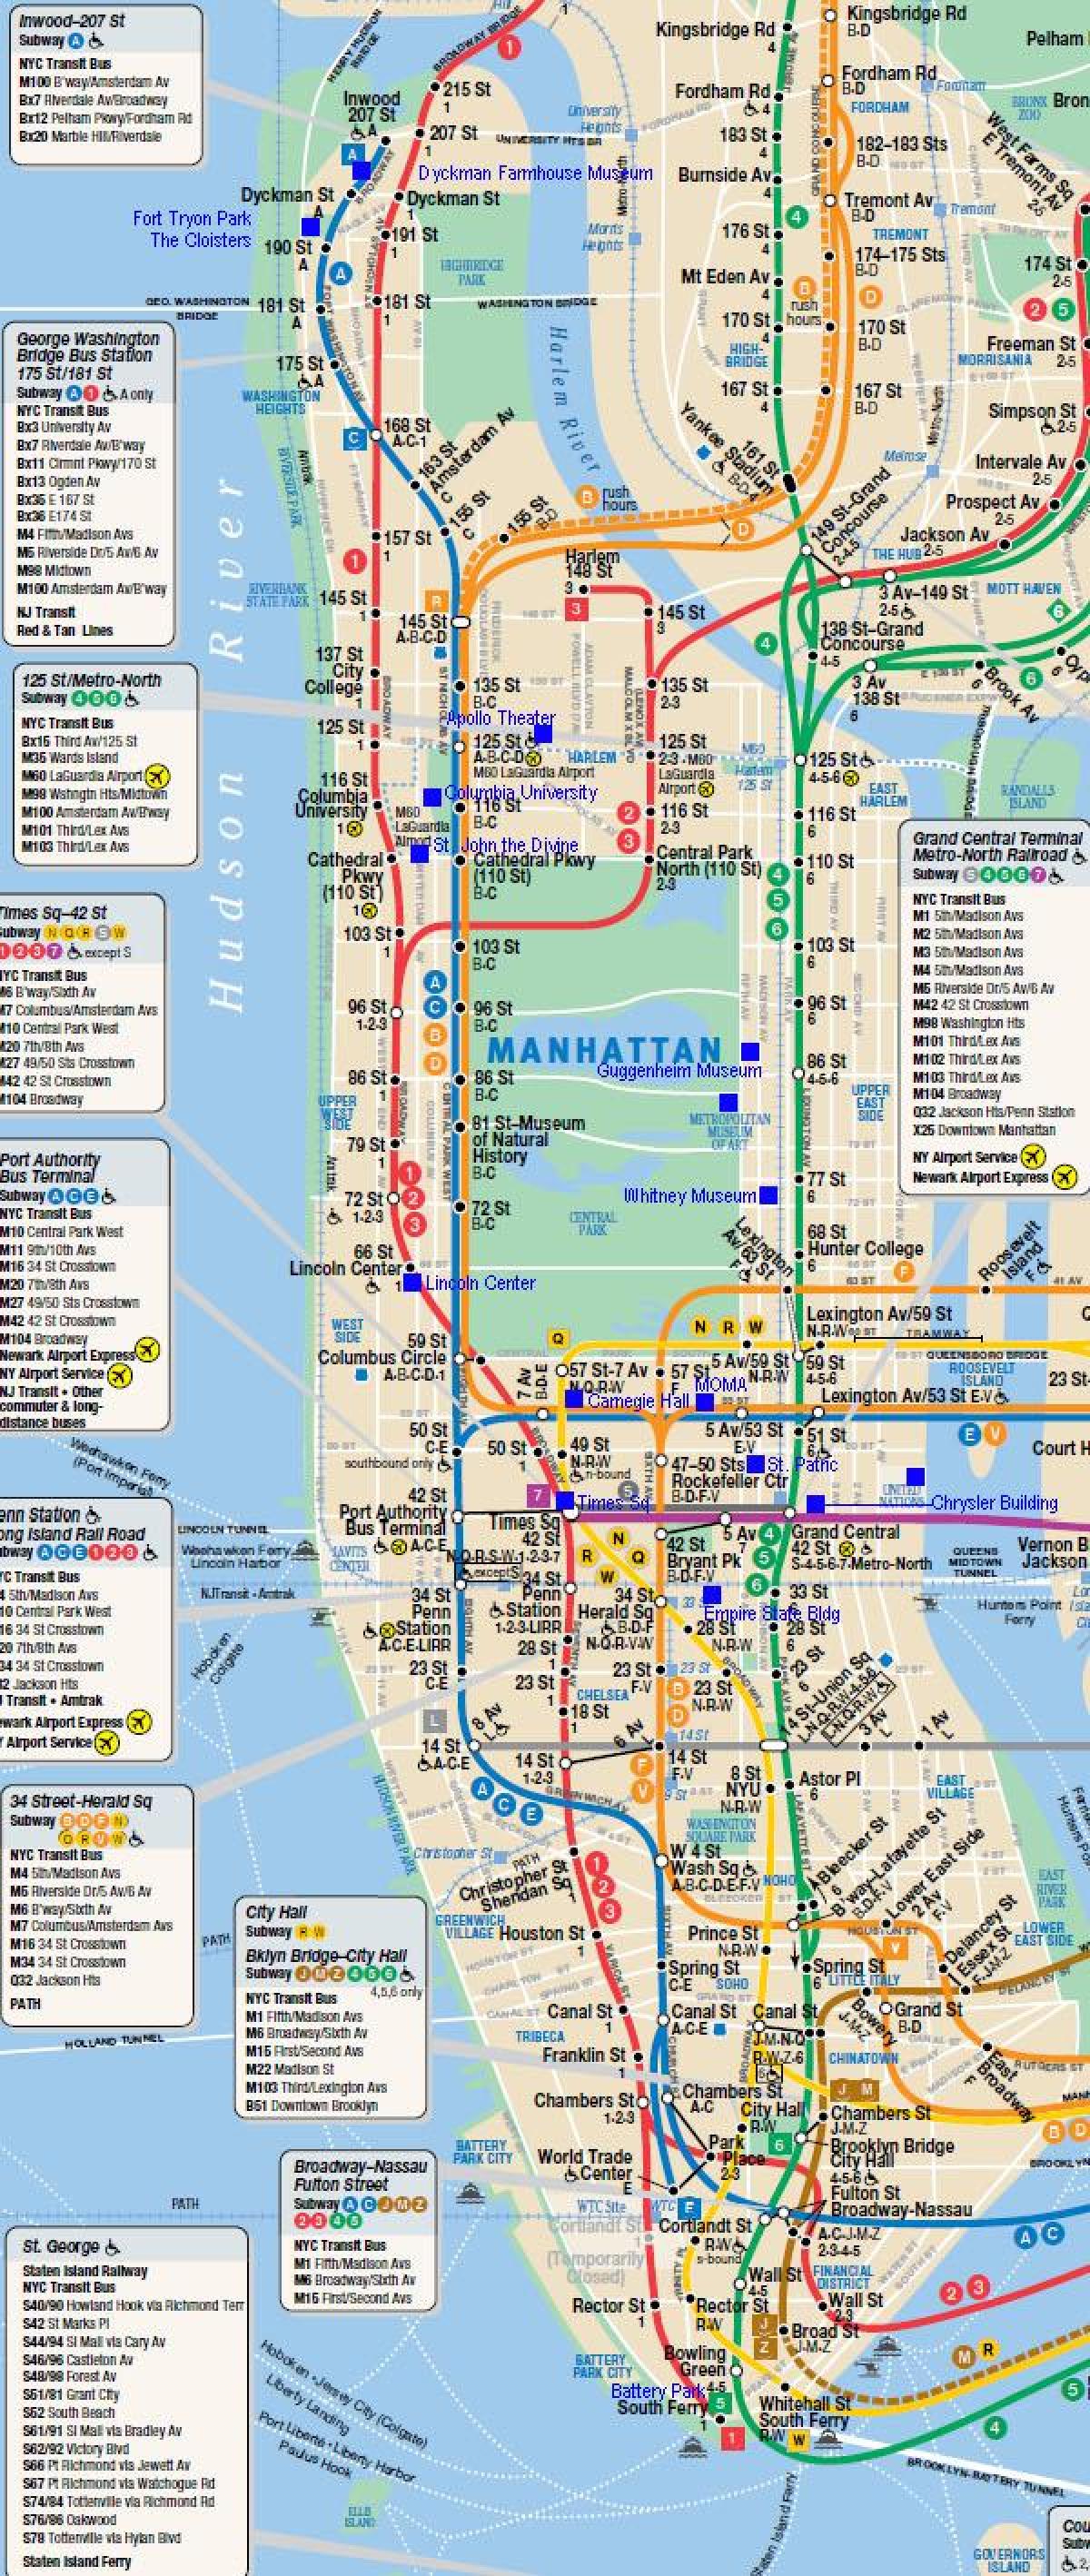 Manhattan järnväg karta